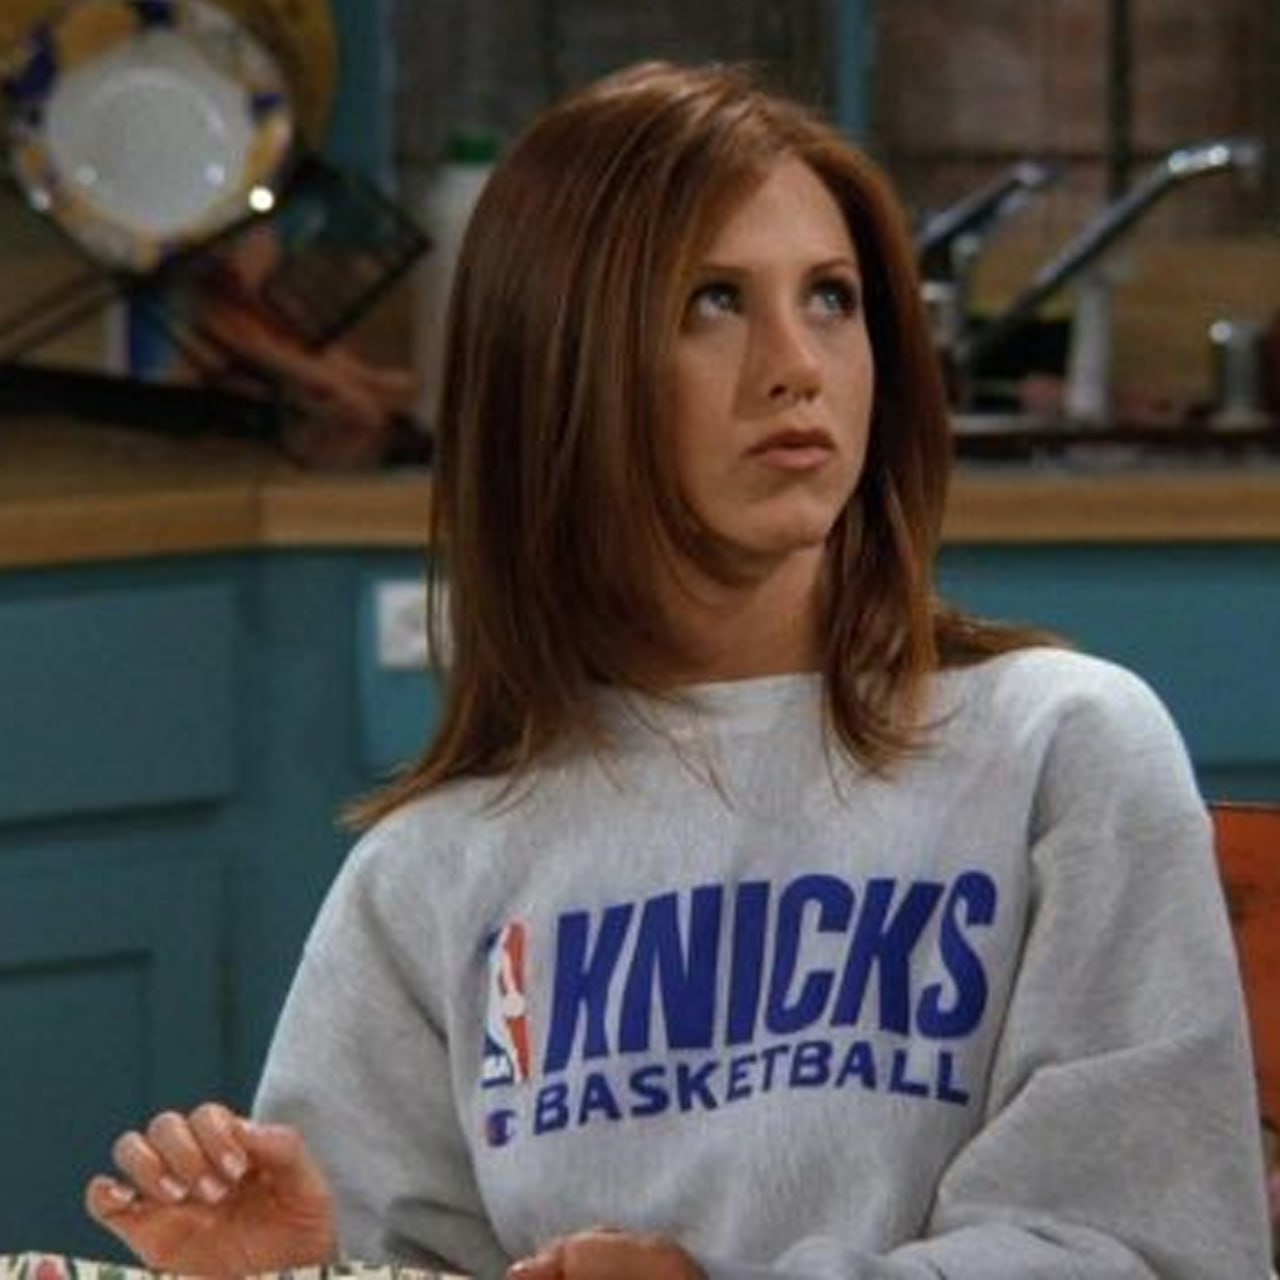 90s Friends Rachel Vintage Knicks Sweatshirt